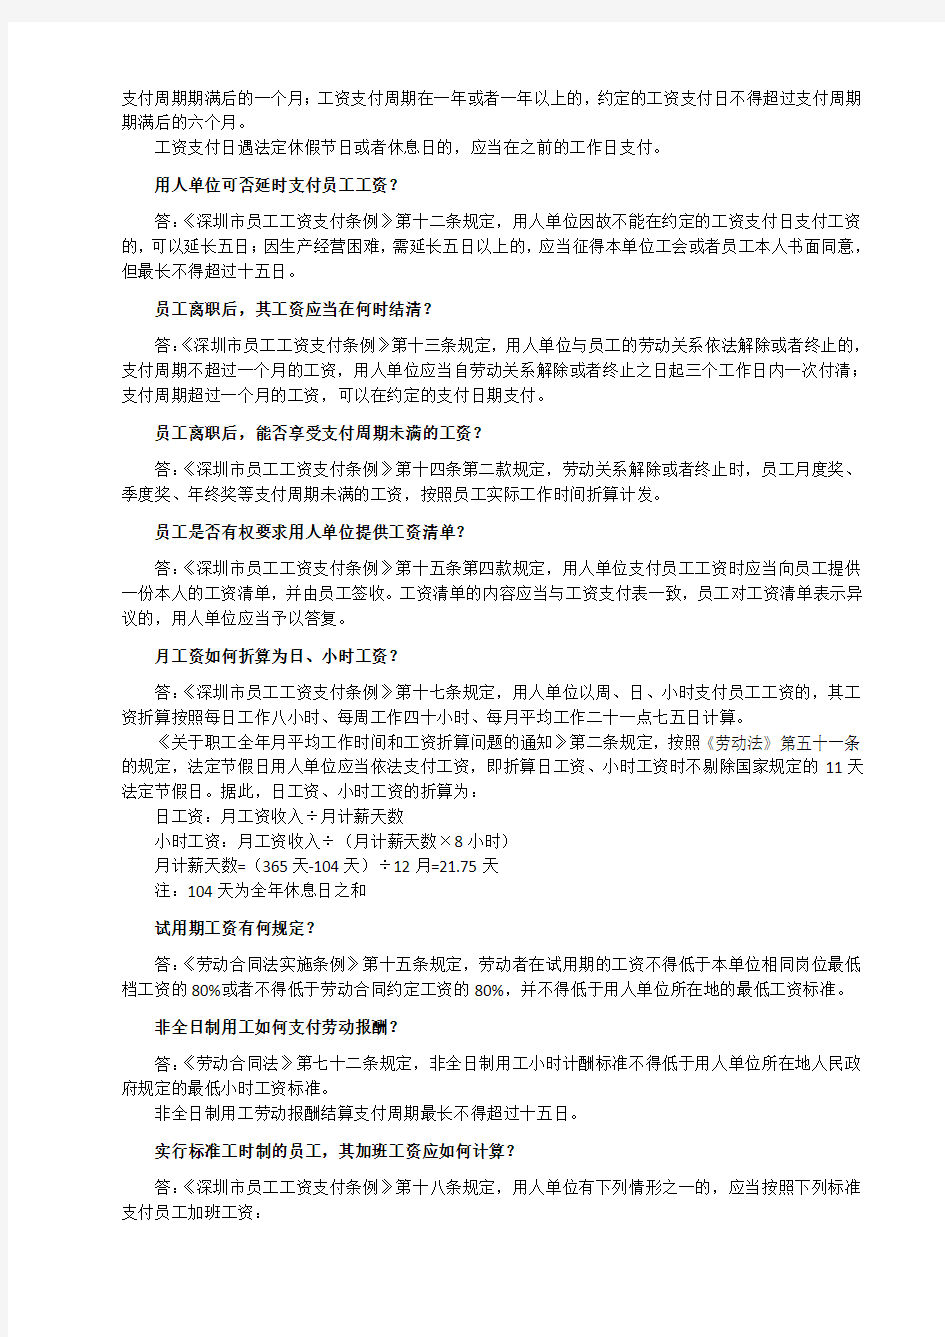 深圳市员工工资支付条例-实用问答-2011-11-22